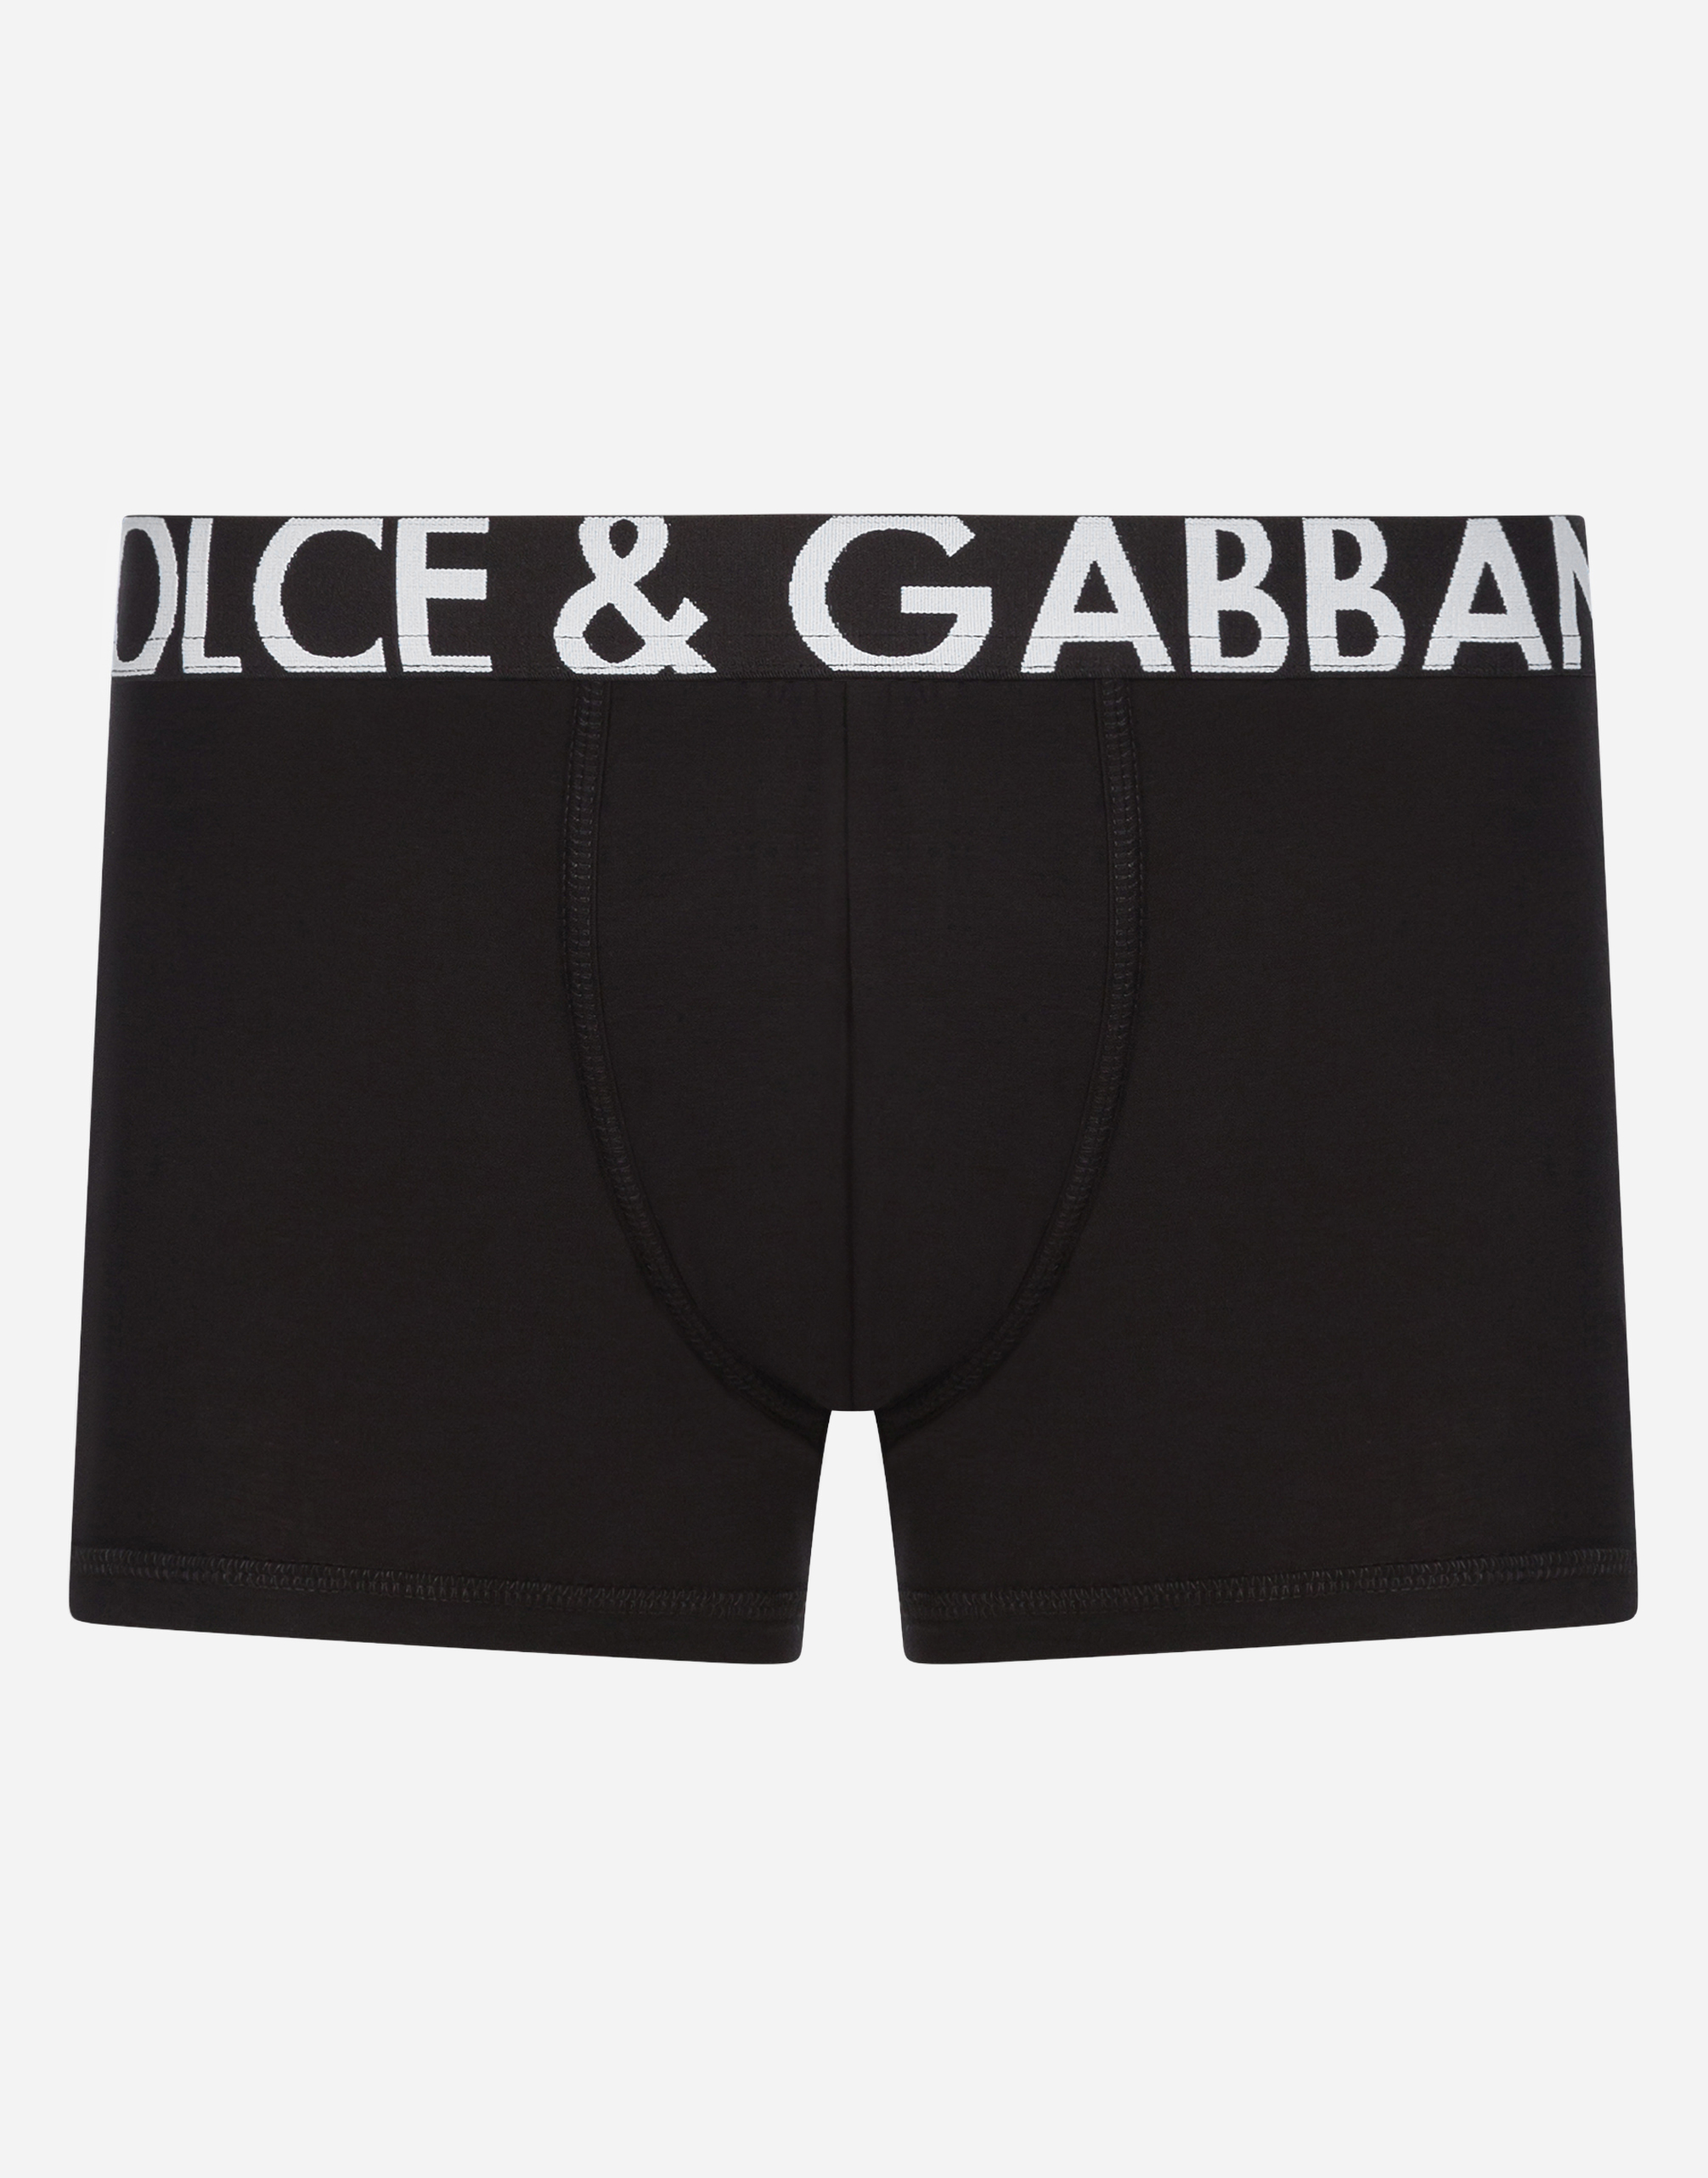 dolce and gabbana underwear womens